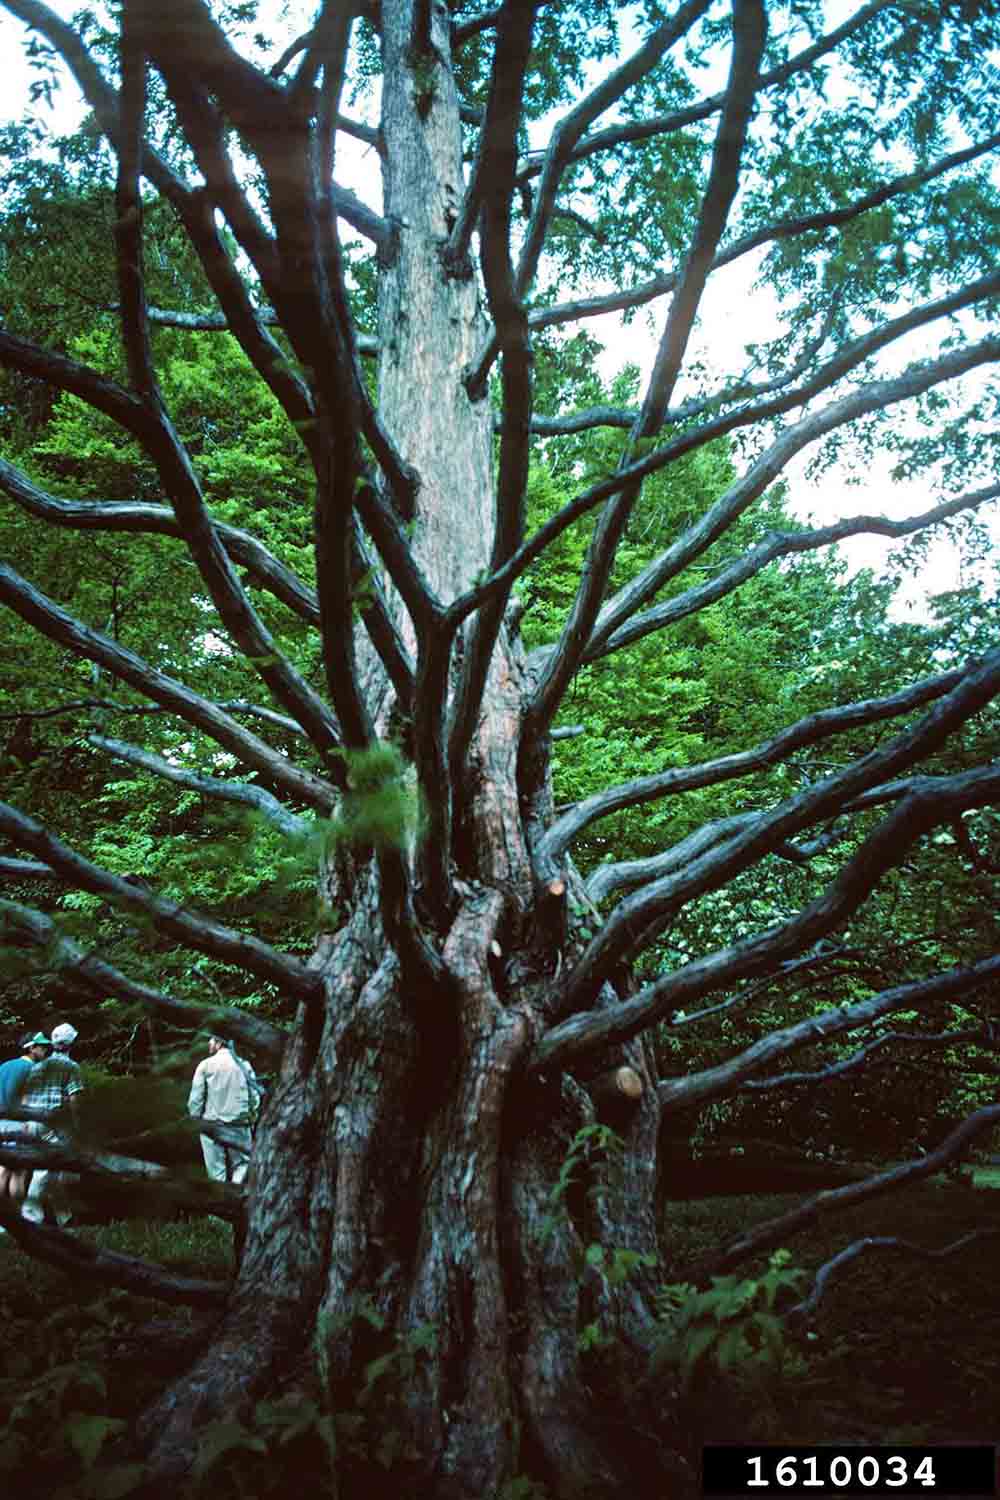 Dawn redwood tree, branching habit